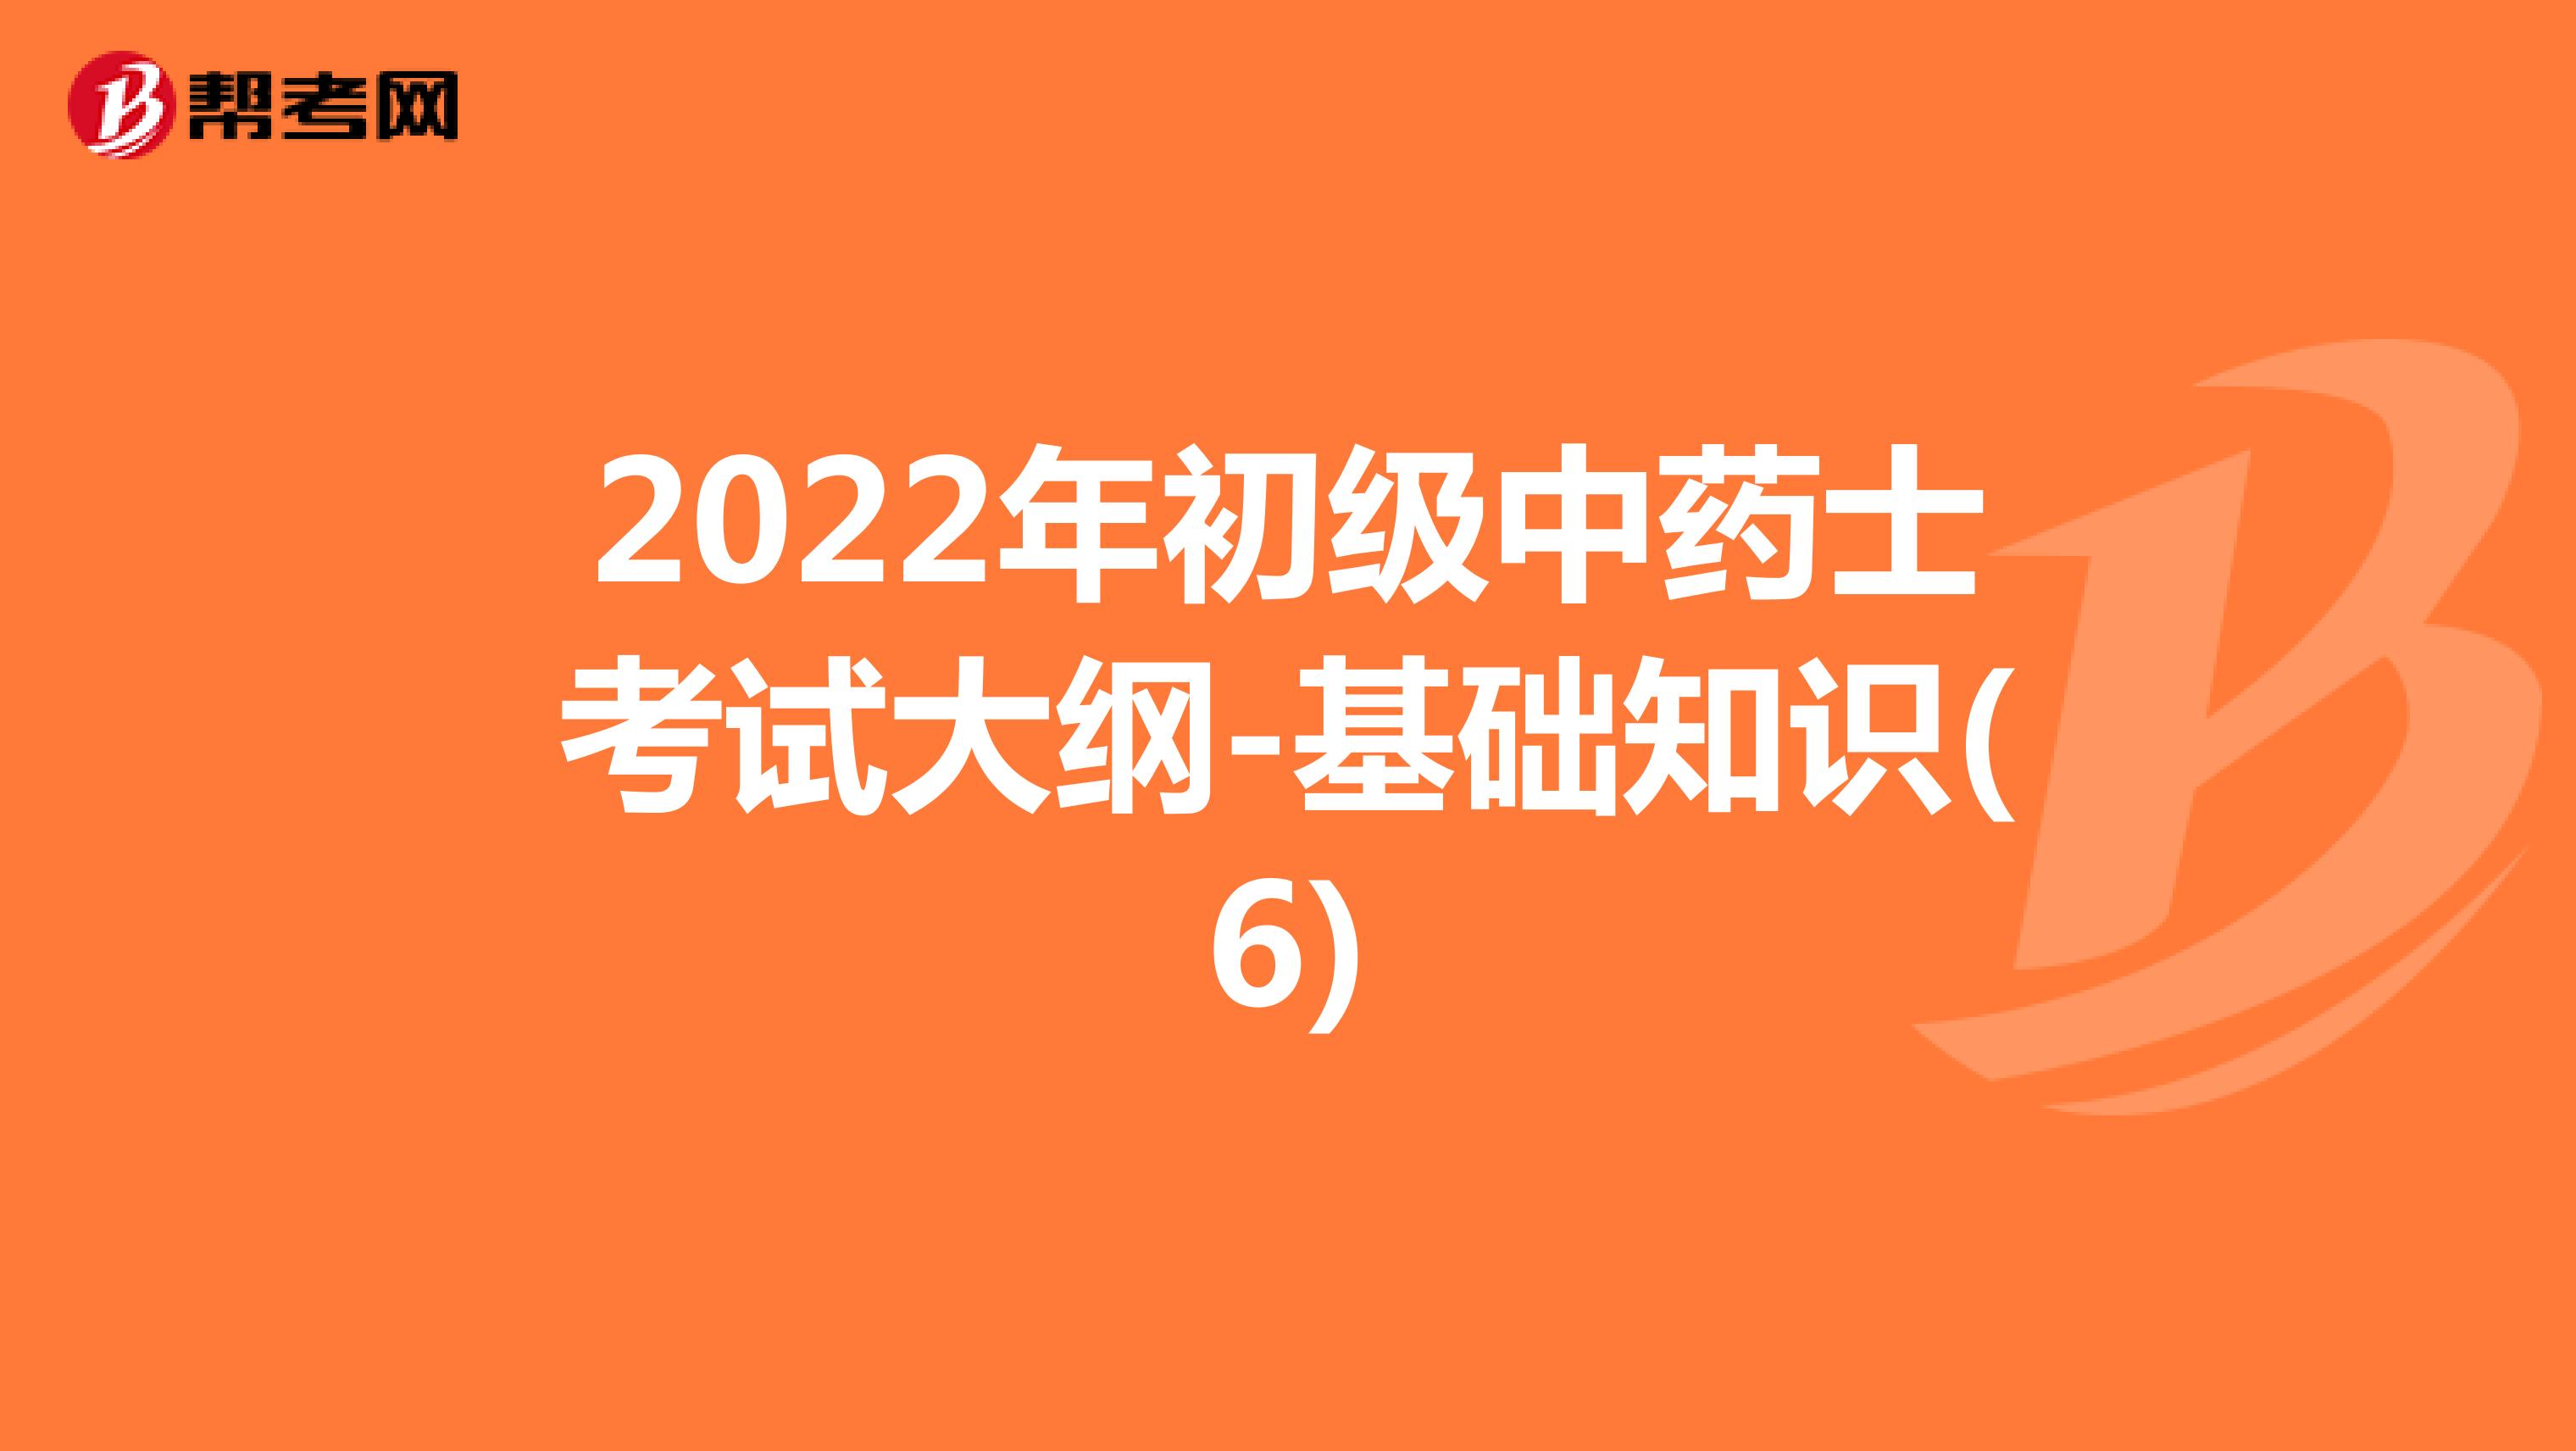 2022年初级中药士考试大纲-基础知识(6)